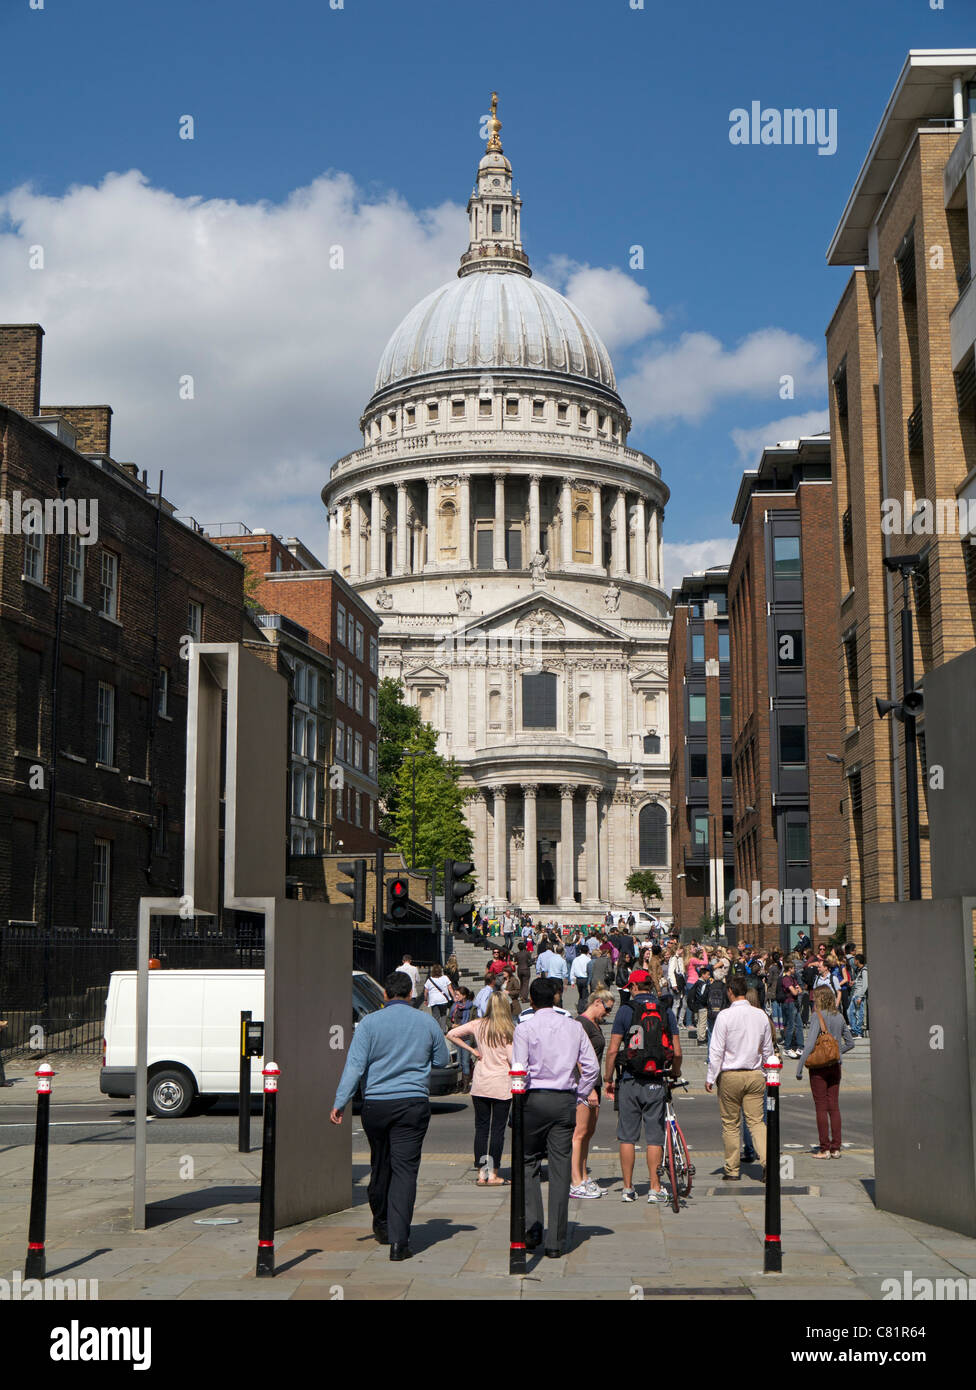 Marcher vers la Cathédrale St Paul à Londres Angleterre Royaume-uni. Banque D'Images